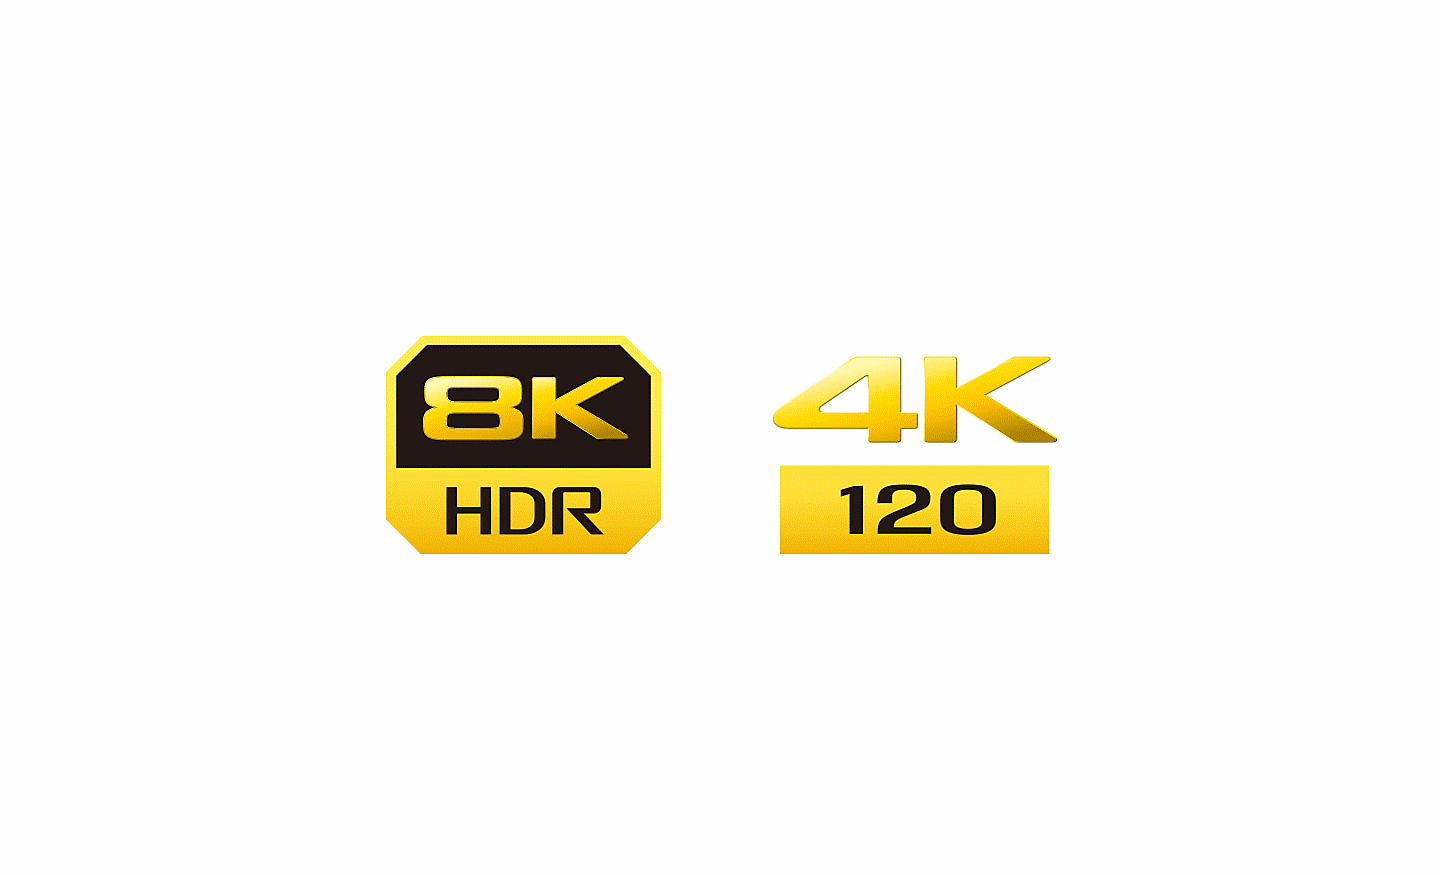 Loga rozlišení 8K HDR a 4K 120